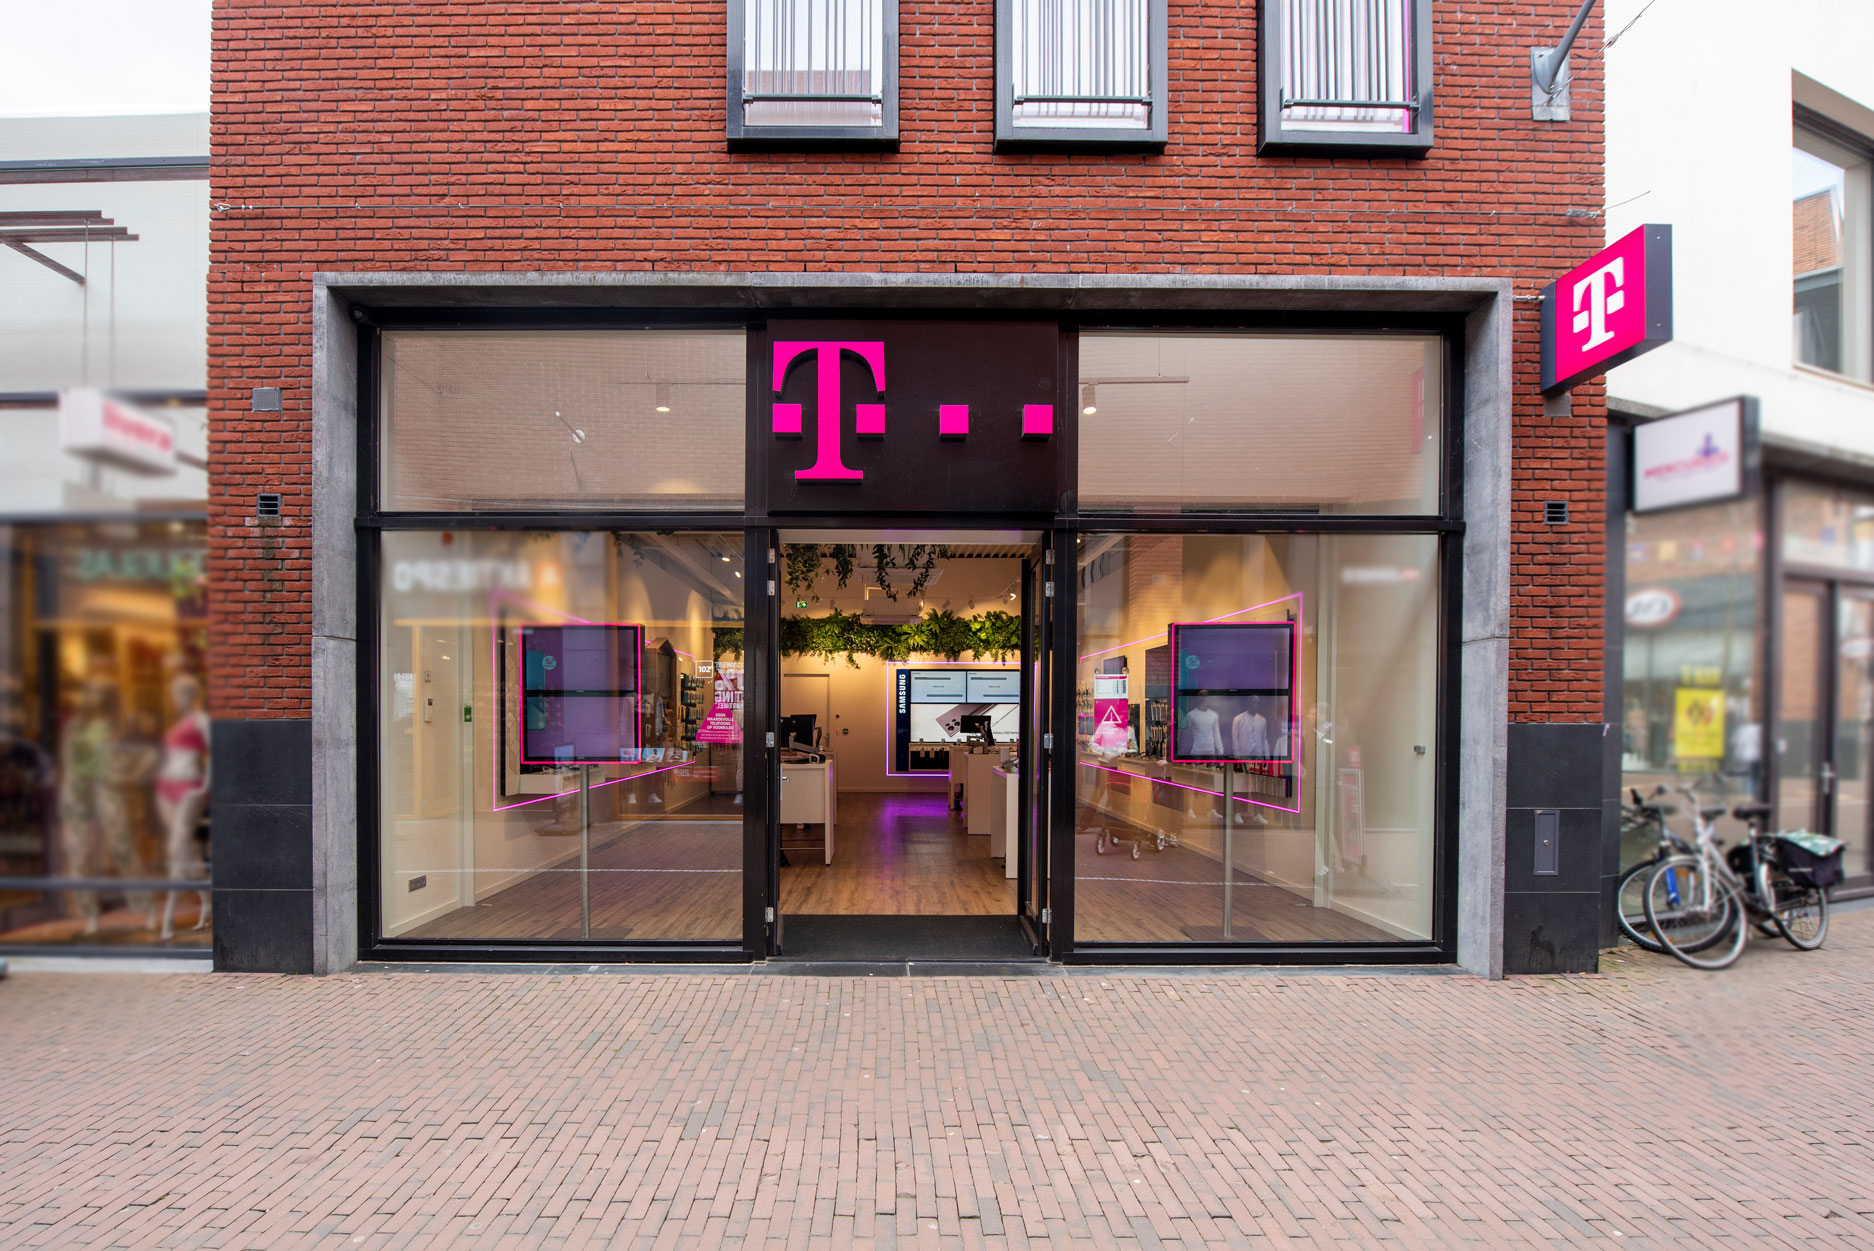 Afbeelding van T-Mobile Shop Assen Mercuriusplein.